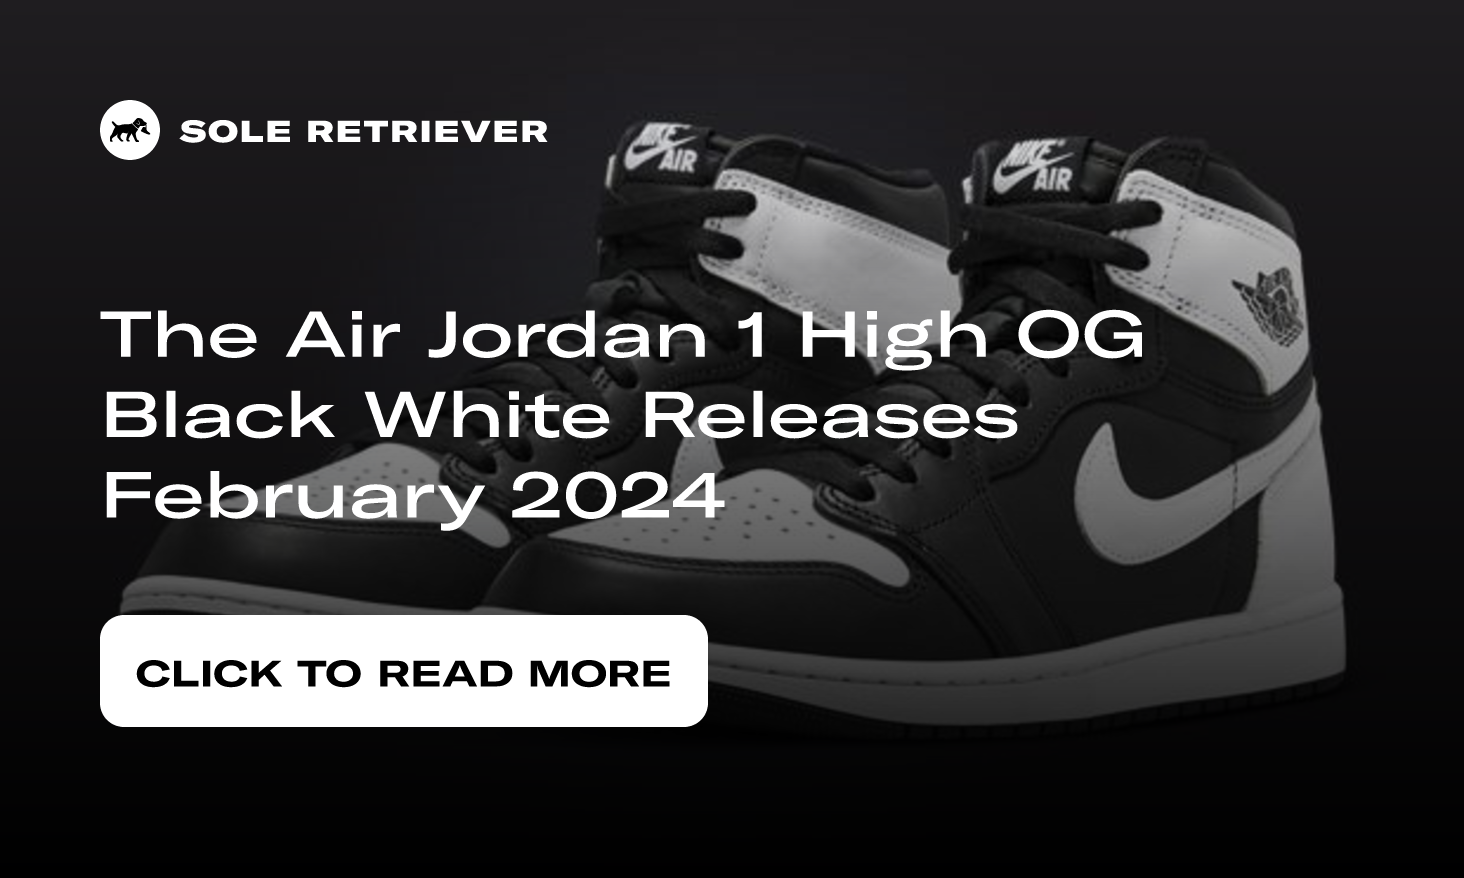 The Air Jordan 1 High OG Black White Releases February 2024